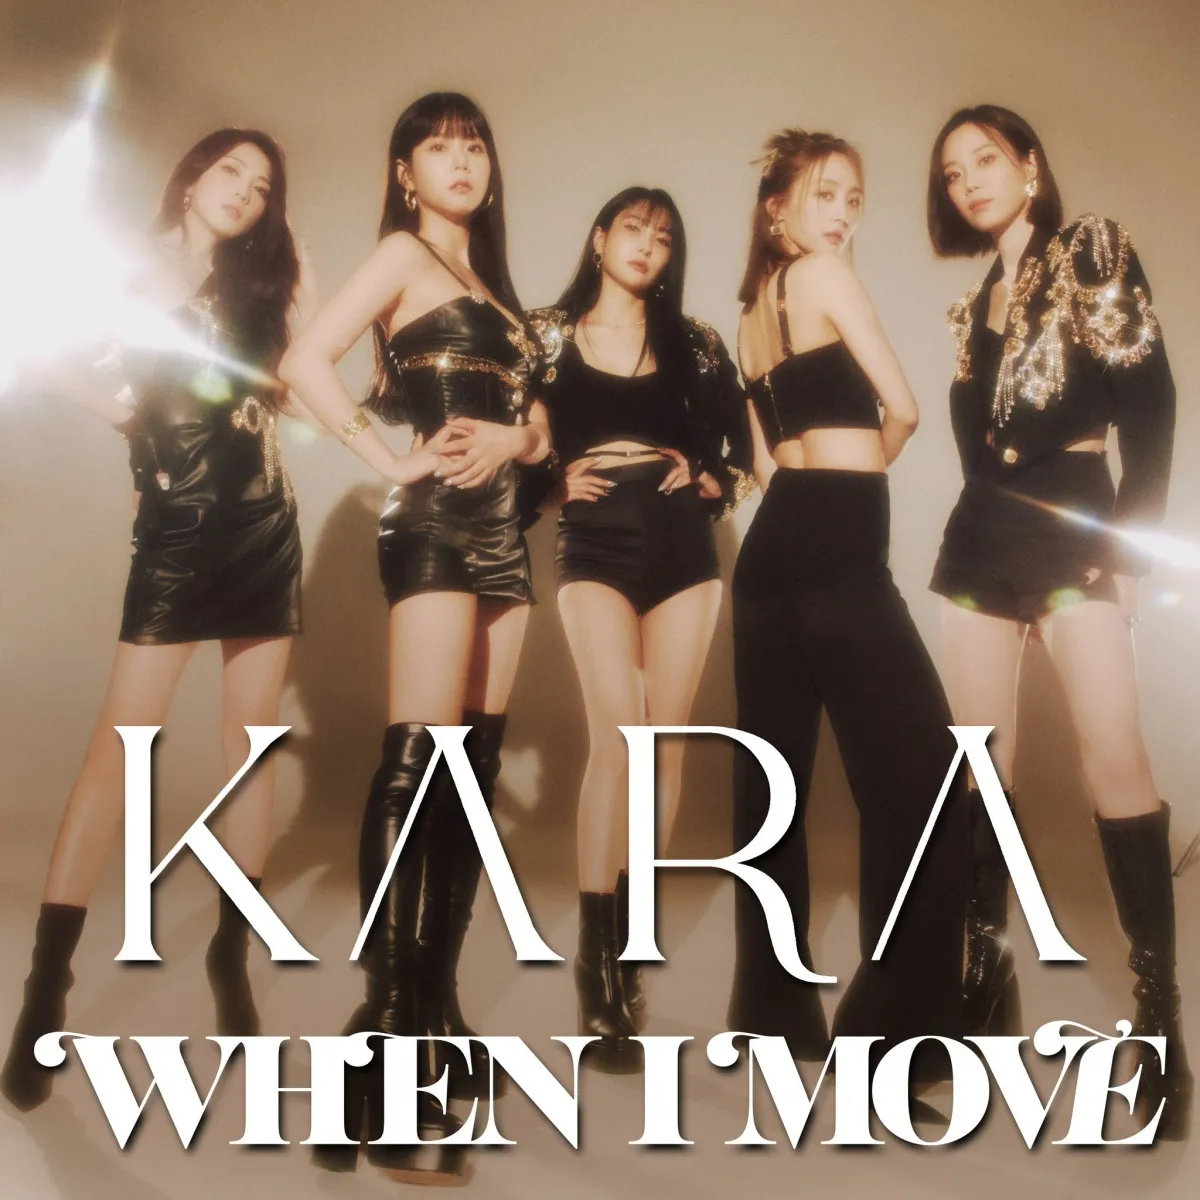 KARA „WHEN I MOVE“, US-Billboard als „Bester K-Pop des Jahres“ ausgezeichnet